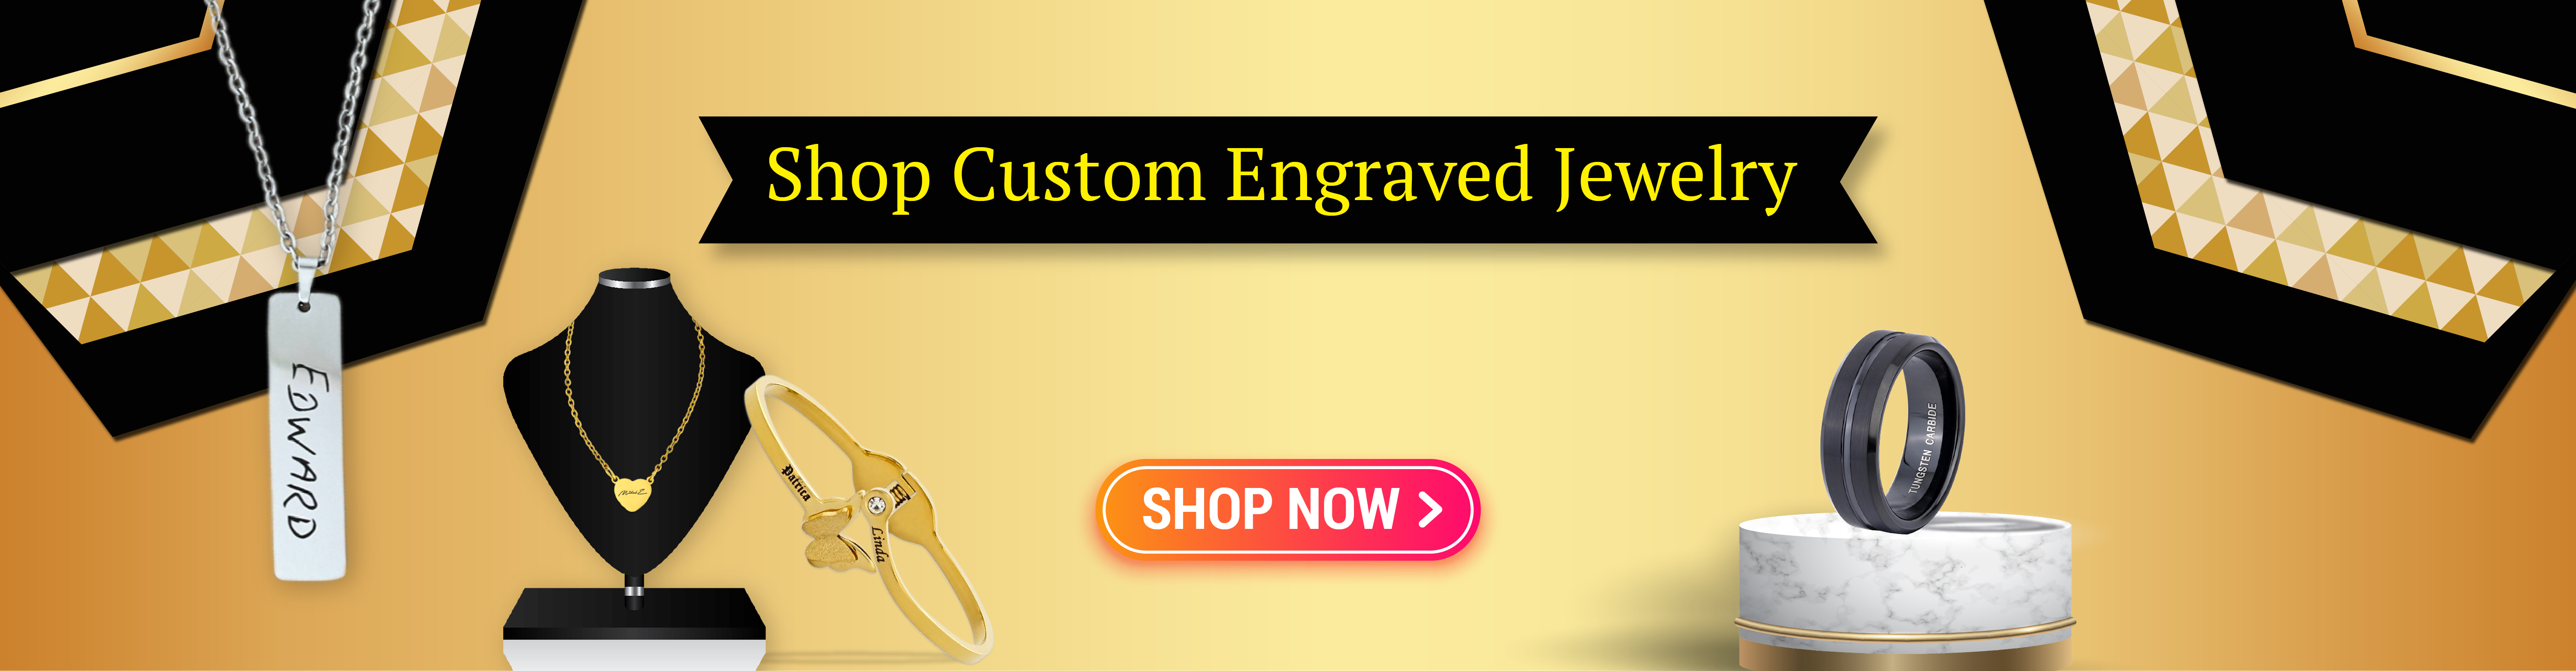 Custom Engraved Jewelry in Ohio